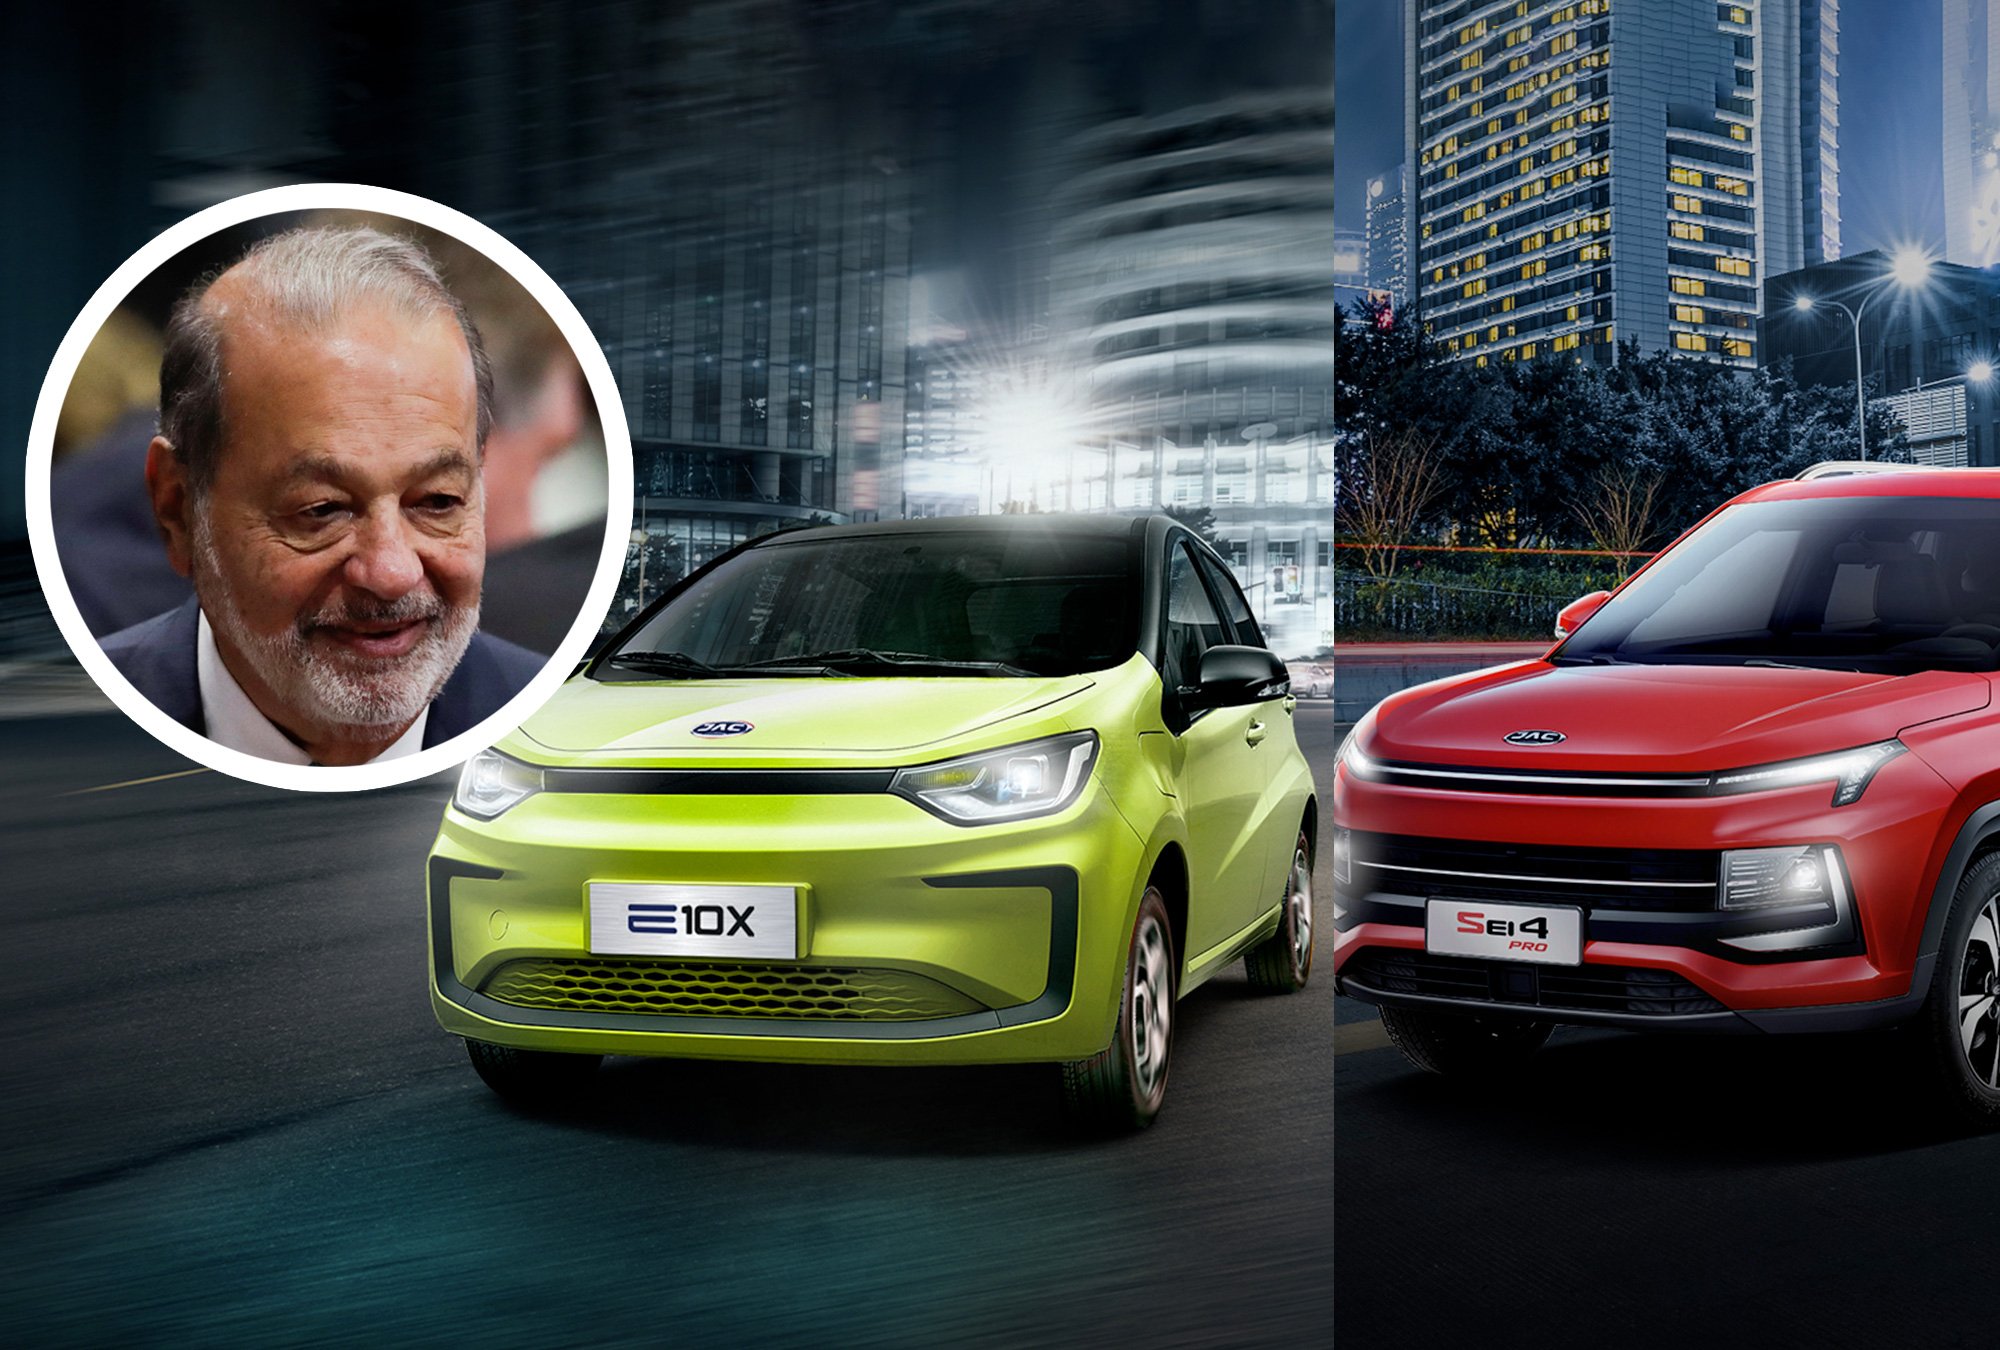 La marca de vehículos eléctricos de Carlos Slim, ¿cuánto cuestan sus autos?